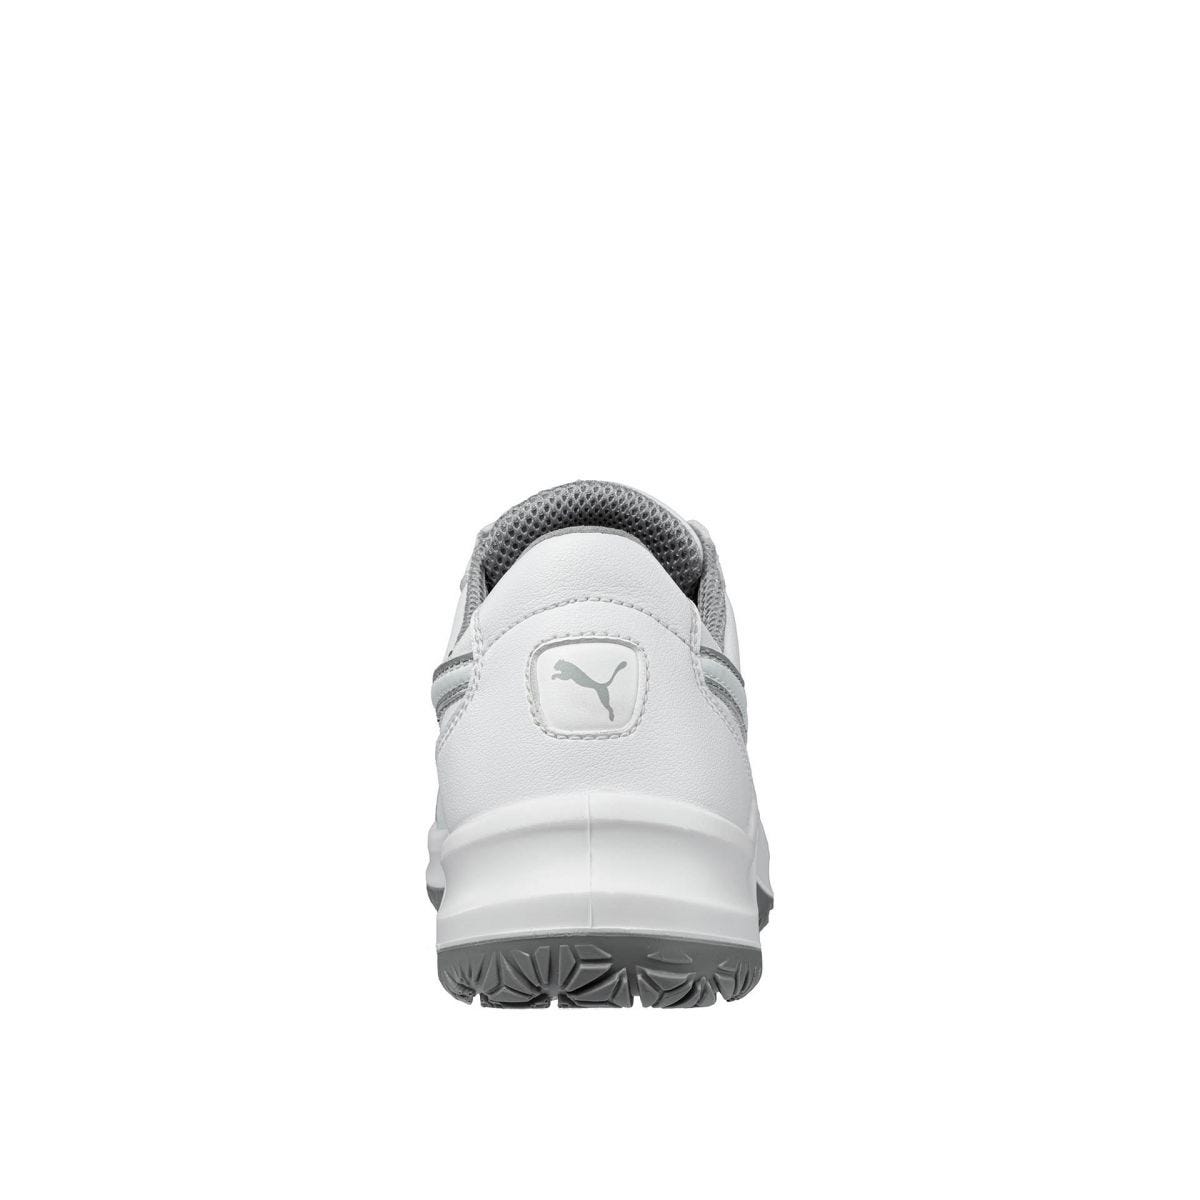 Chaussures de sécurité Clarity low S2 SRC - Puma - Taille 45 1